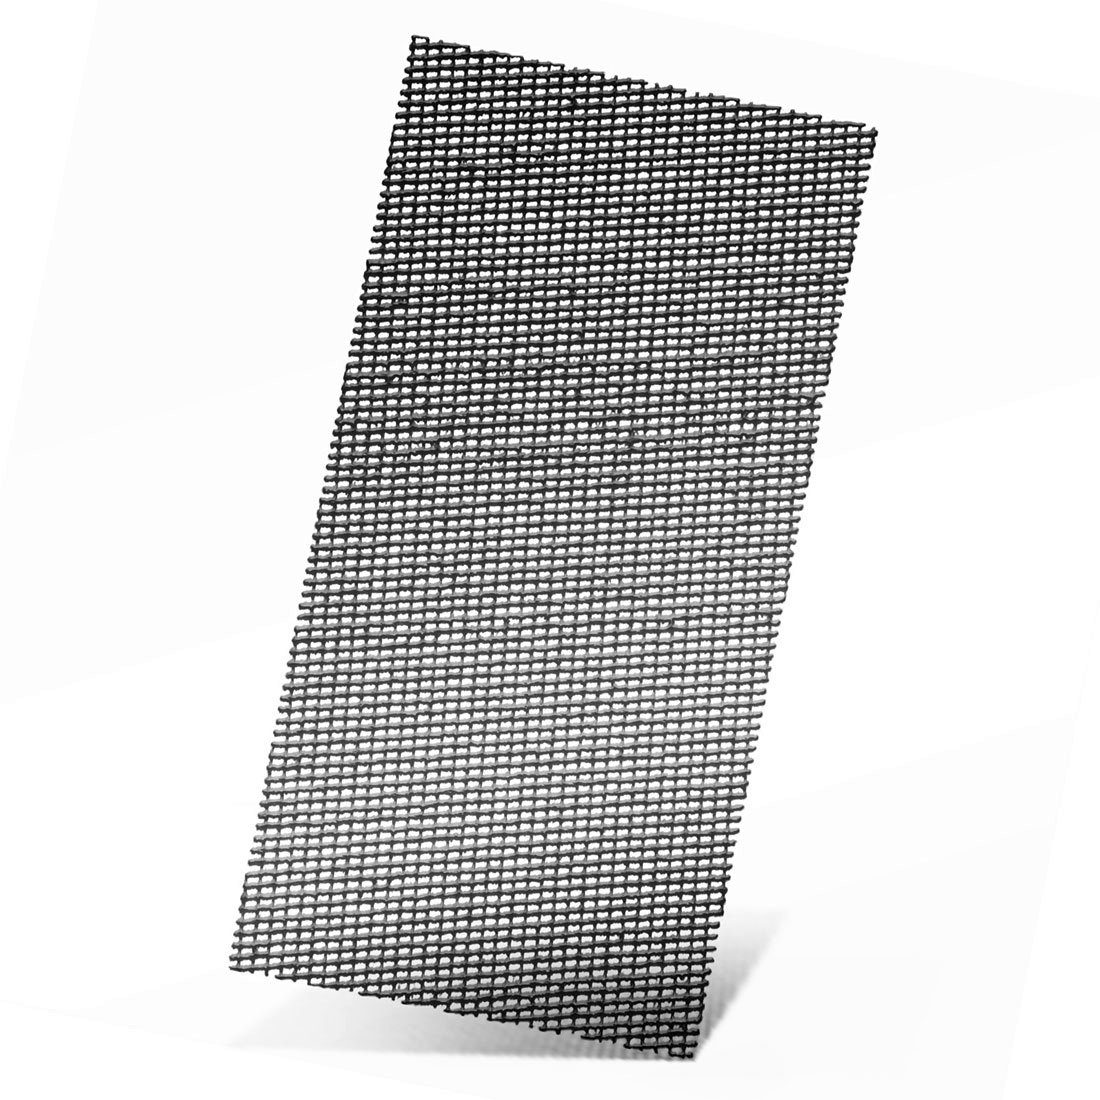 MENZER Schleifpapier 230 x 115 mm Klett-Schleifgitter für Schwingschleifer, Siliciumcarbid, 20 Stk., K100